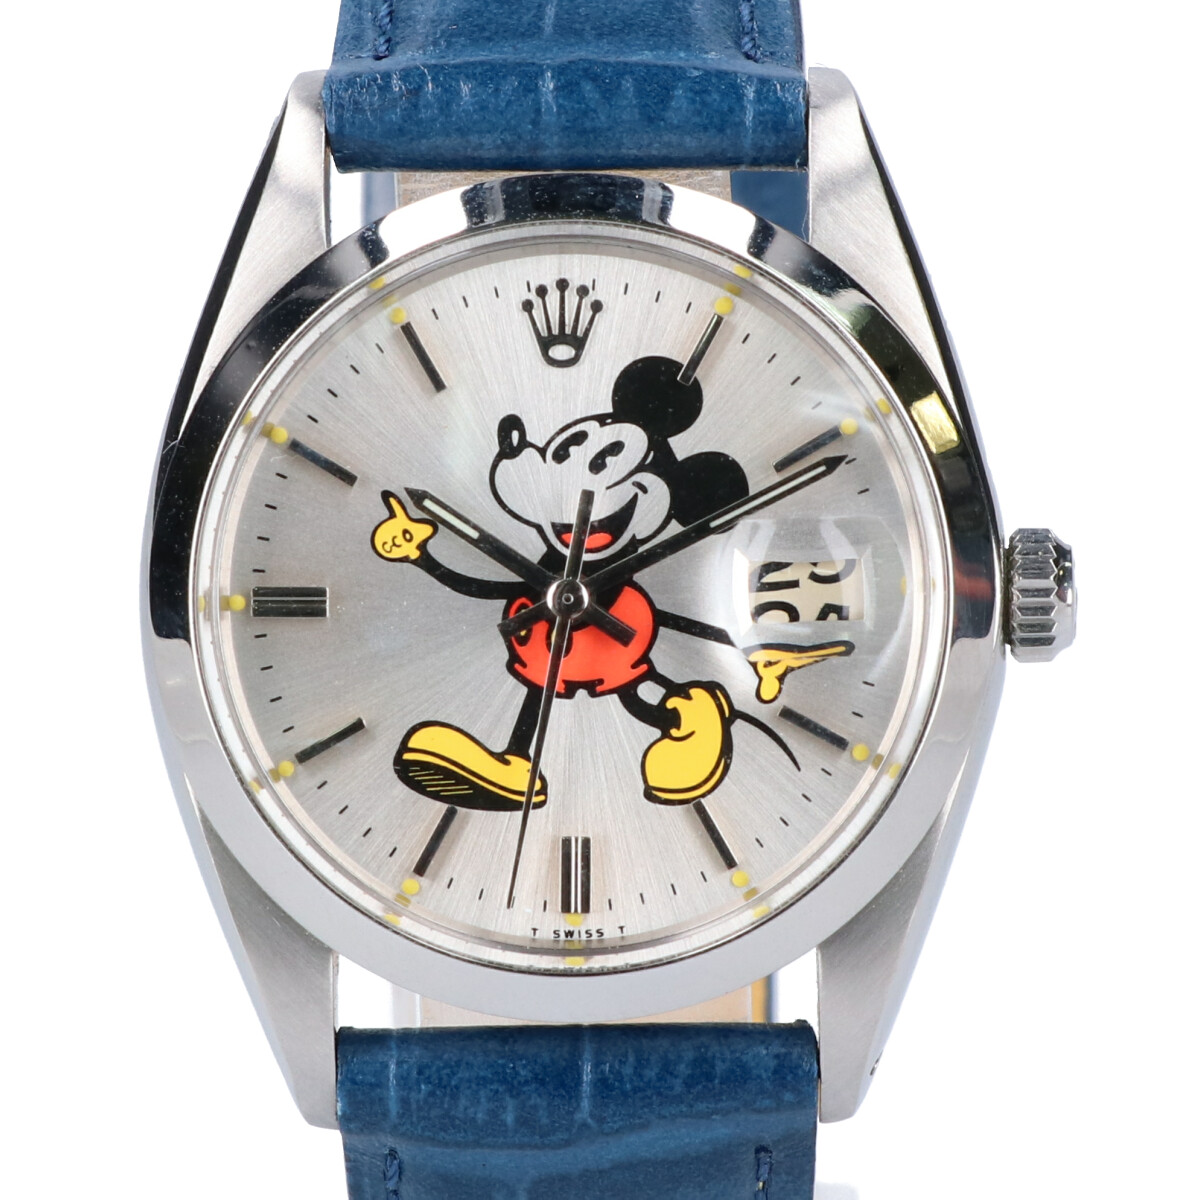 ロレックスのRef.6694 Cal.1225 ミッキーリダンダイヤル オイスターデイト プレシジョン 手巻き腕時計の買取実績です。